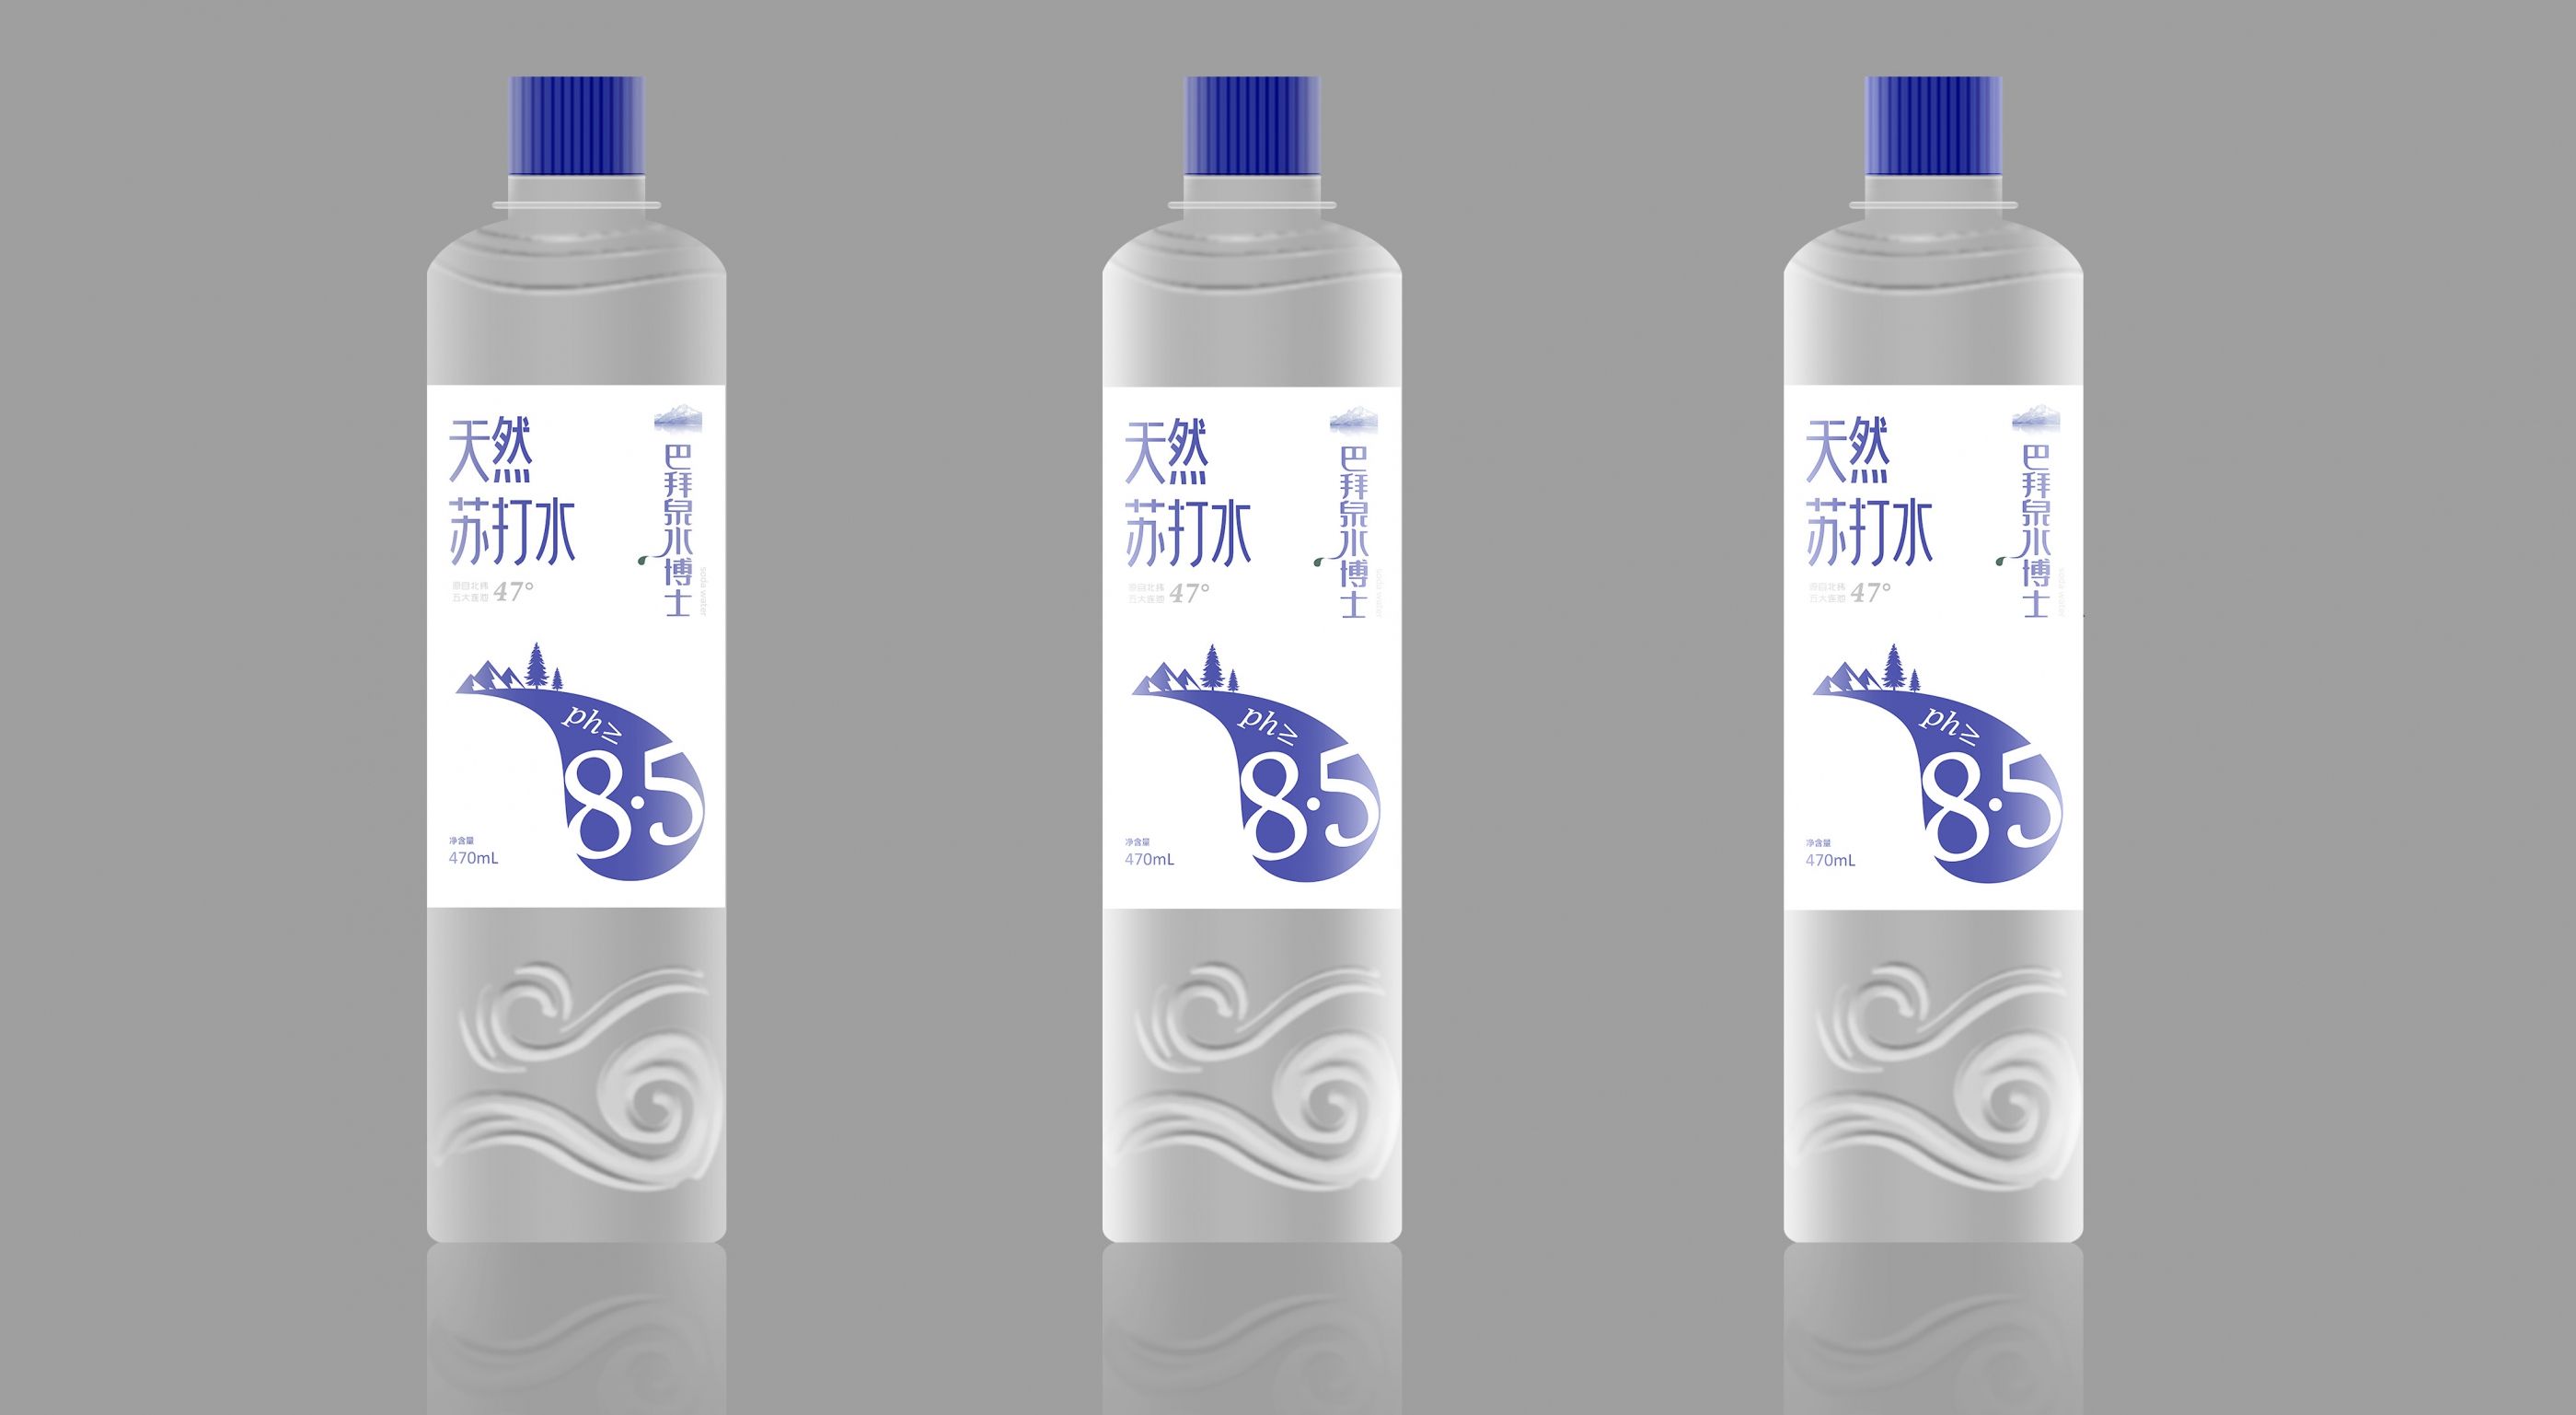 天然苏打水包装设计 飞特网 会员原创饮品包装设计